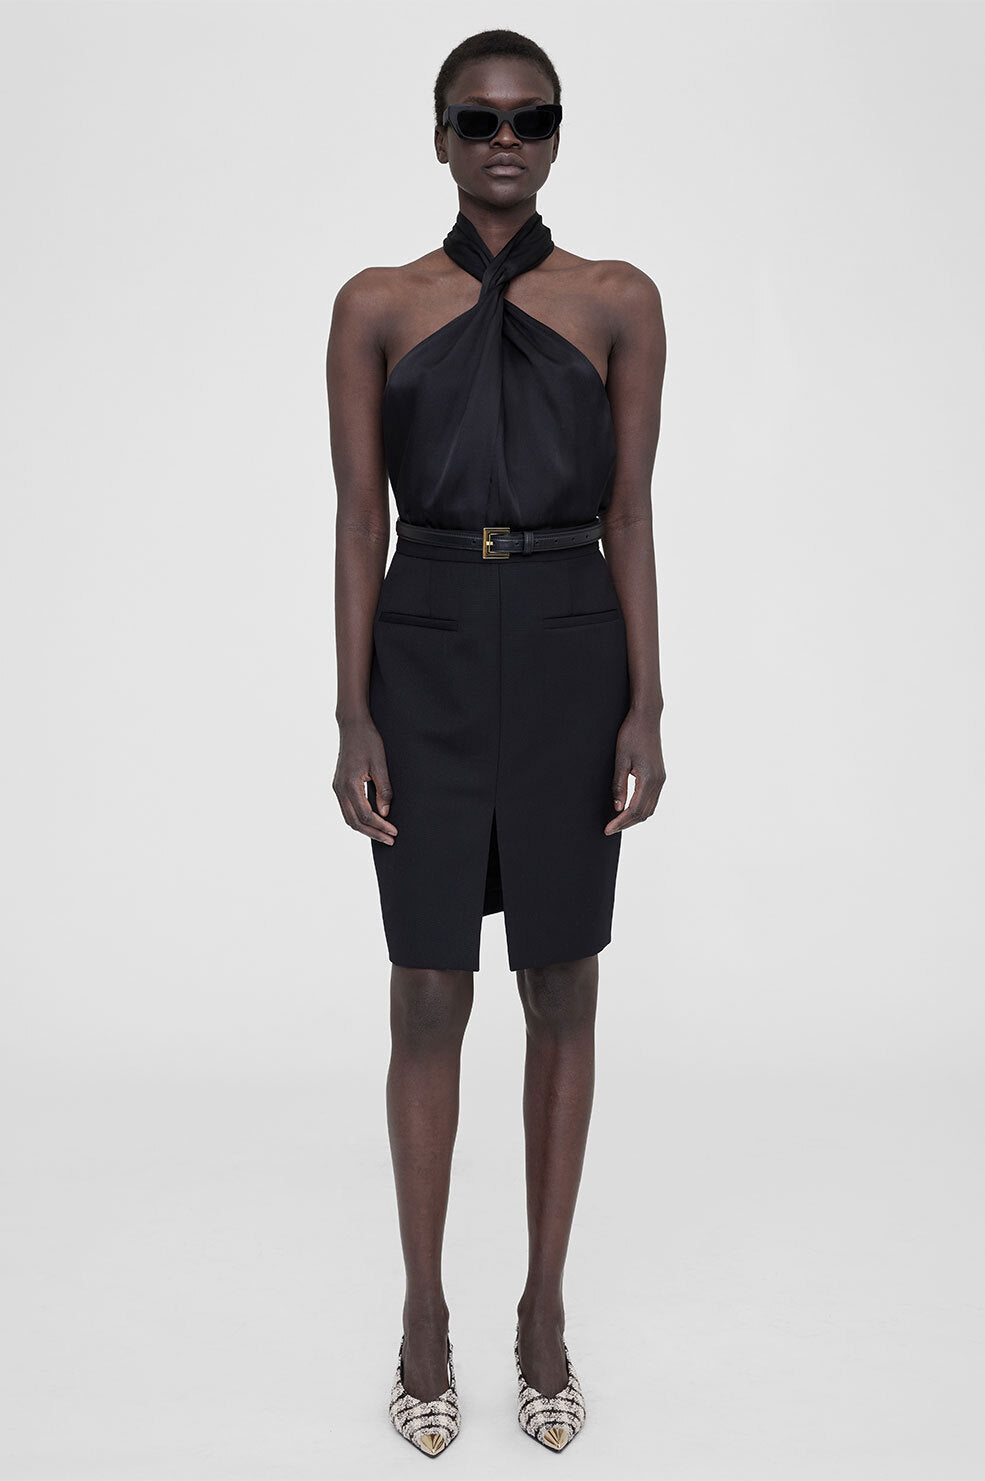 ANINE BING Vena Skirt - Black  - On Model Front